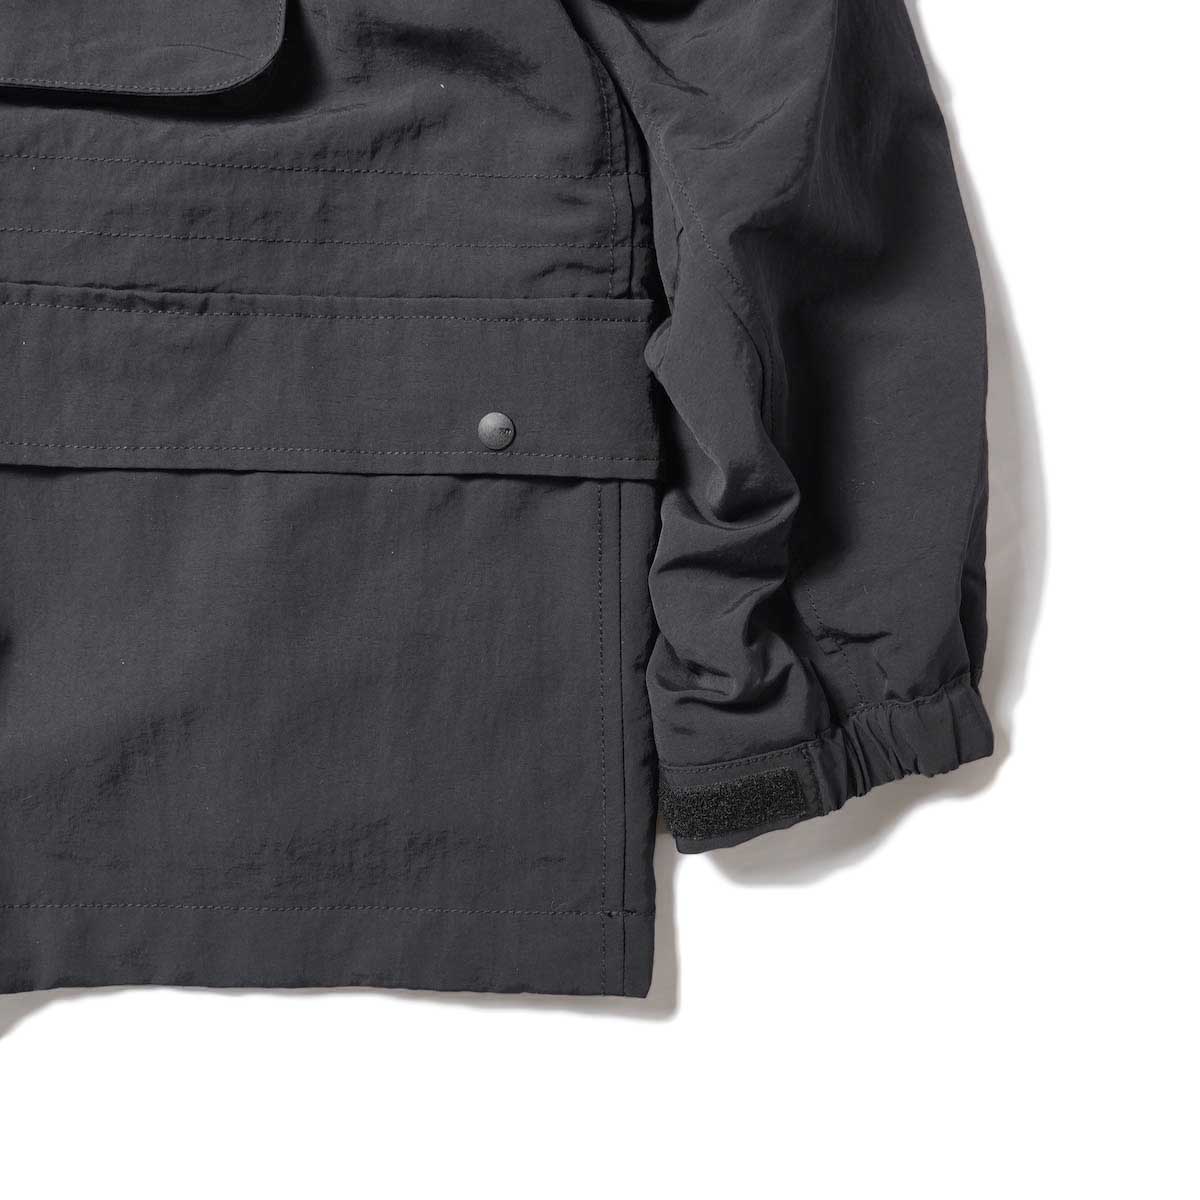 DAIWA PIER39 / TECH HIKER MOUNTAIN PARKA (Black)袖、裾